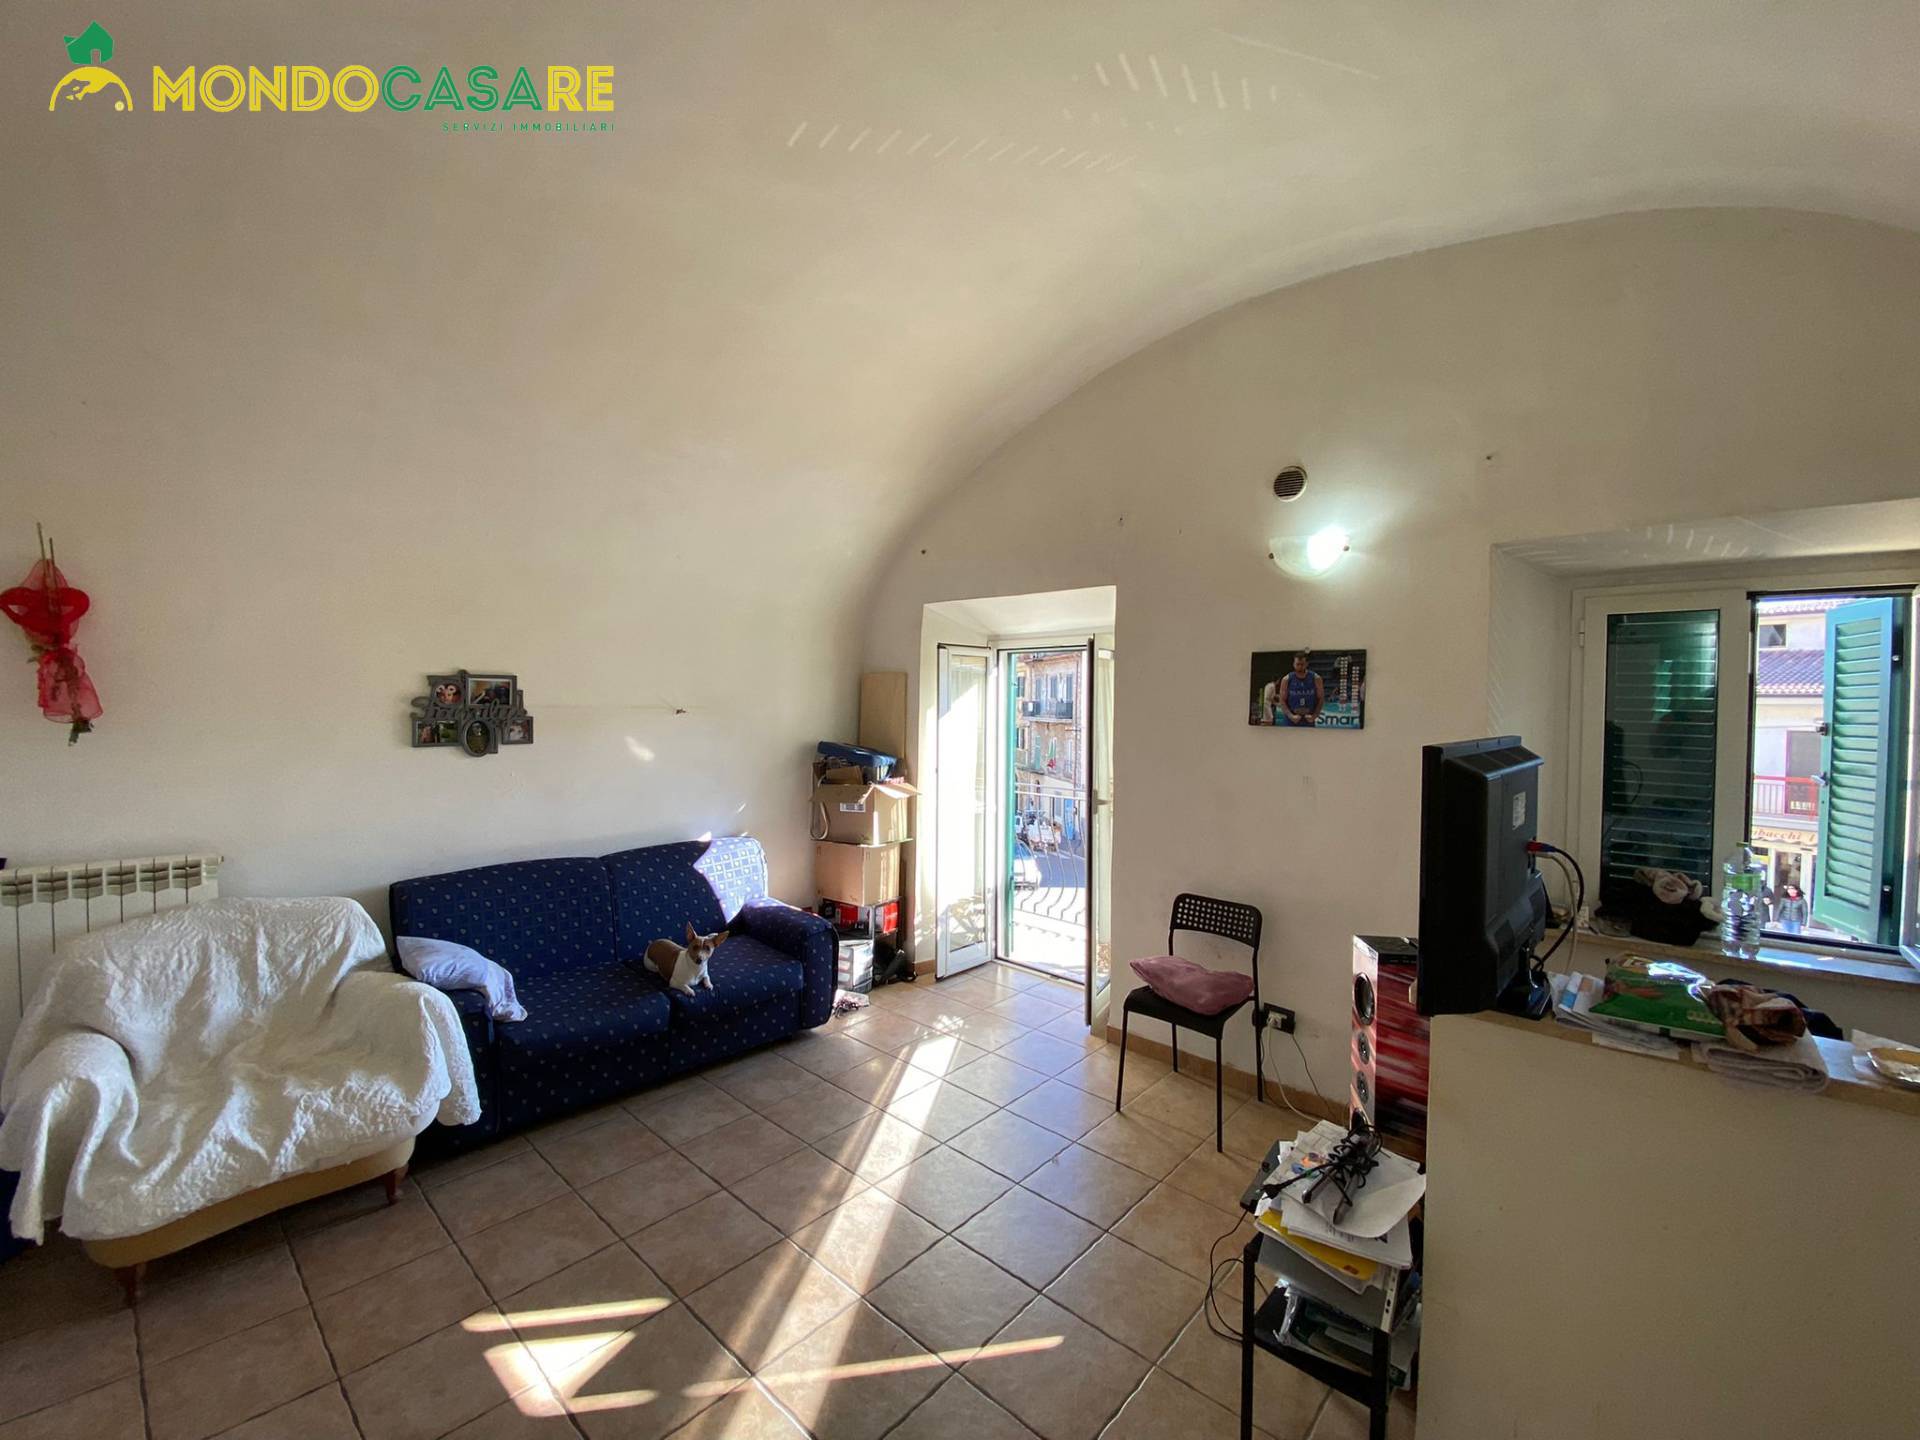 Appartamento in vendita a Marcellina, 2 locali, prezzo € 50.000 | CambioCasa.it